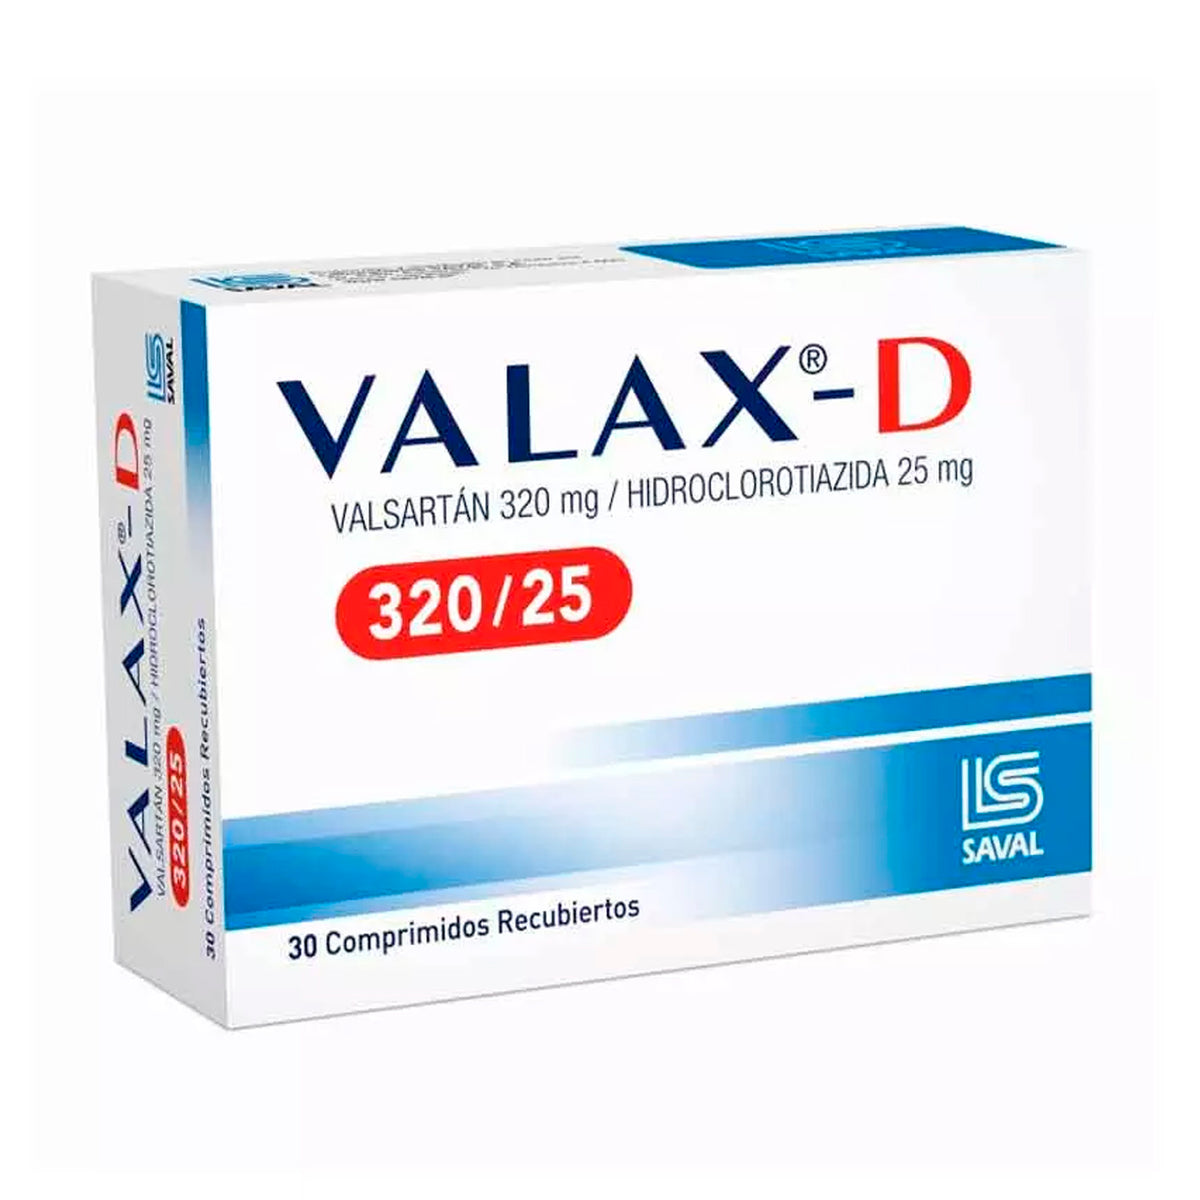 Valax-D Comprimidos Recubiertos 320/25